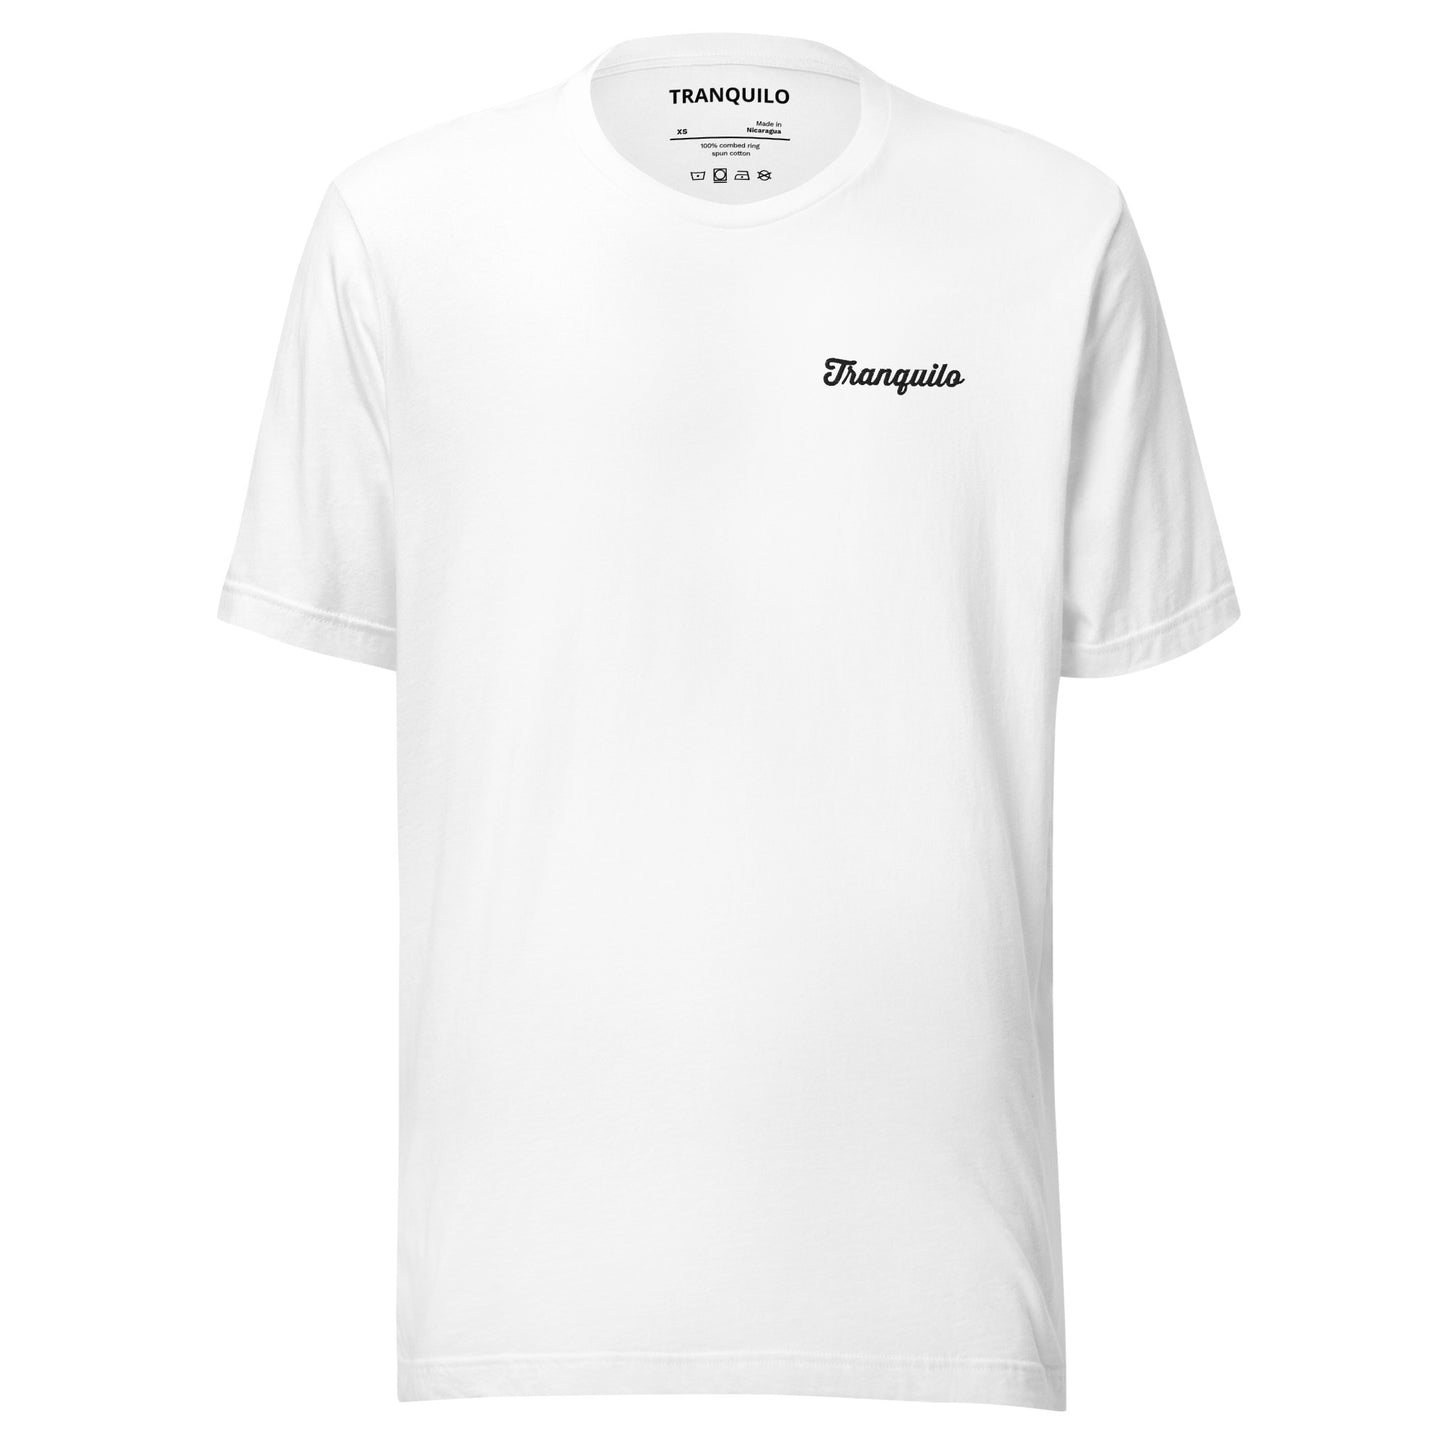 TRANQUILO Script T-shirt